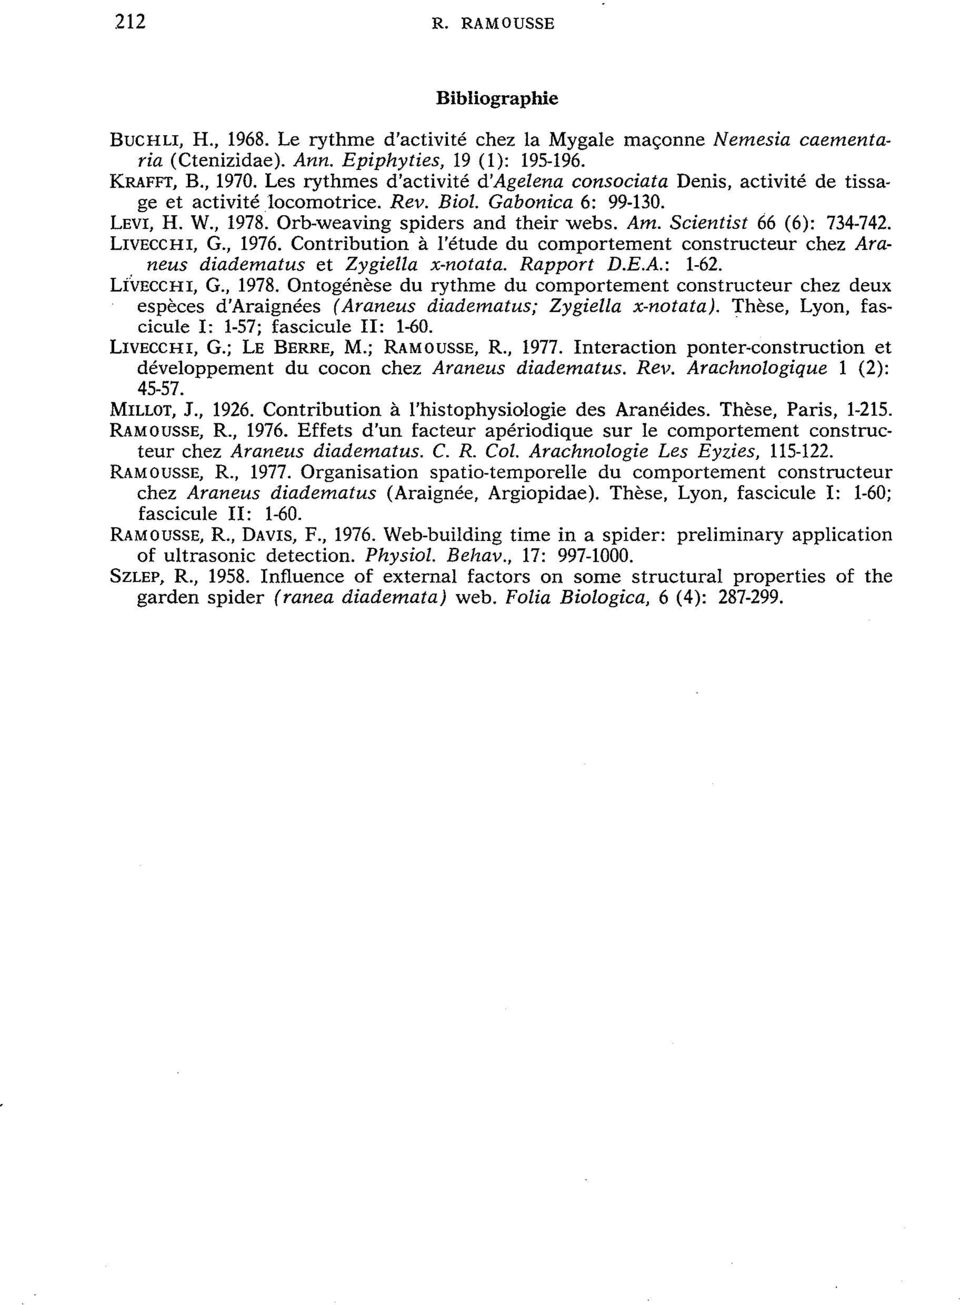 Scientist 66 (6): 734-742. LIvEccHI, G., 1976. Contribution à l'étude du comportement constructeur chez Araneus diadematus et Zygiella x-notata. Rapport D.E.A.: 1-62. LiVECCHI, G., 1978.